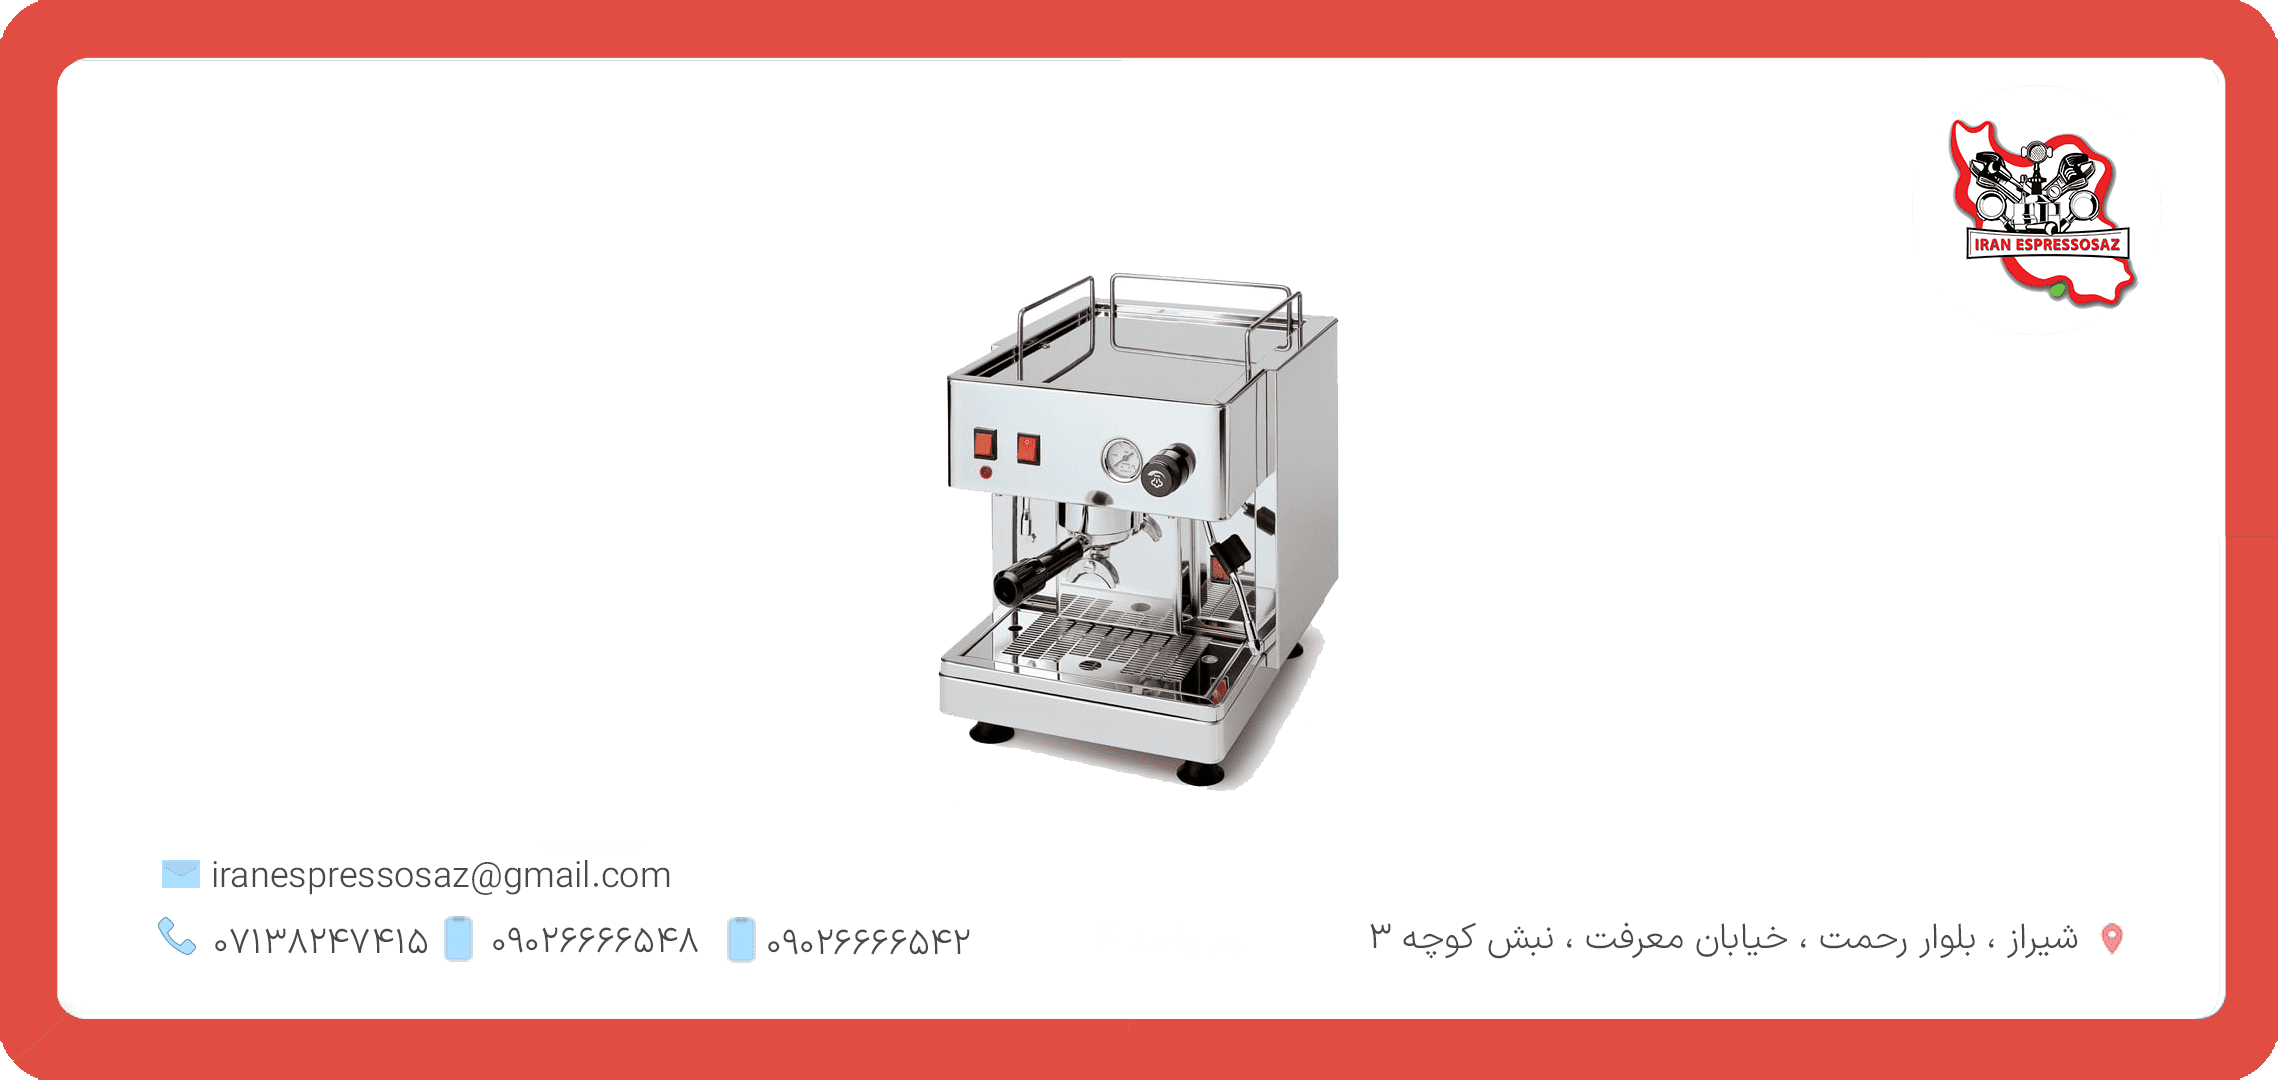 اسپرسوساز نیمه اتومات: ترکیبی از سهولت و کیفیت در تهیه قهوه اسپرسو